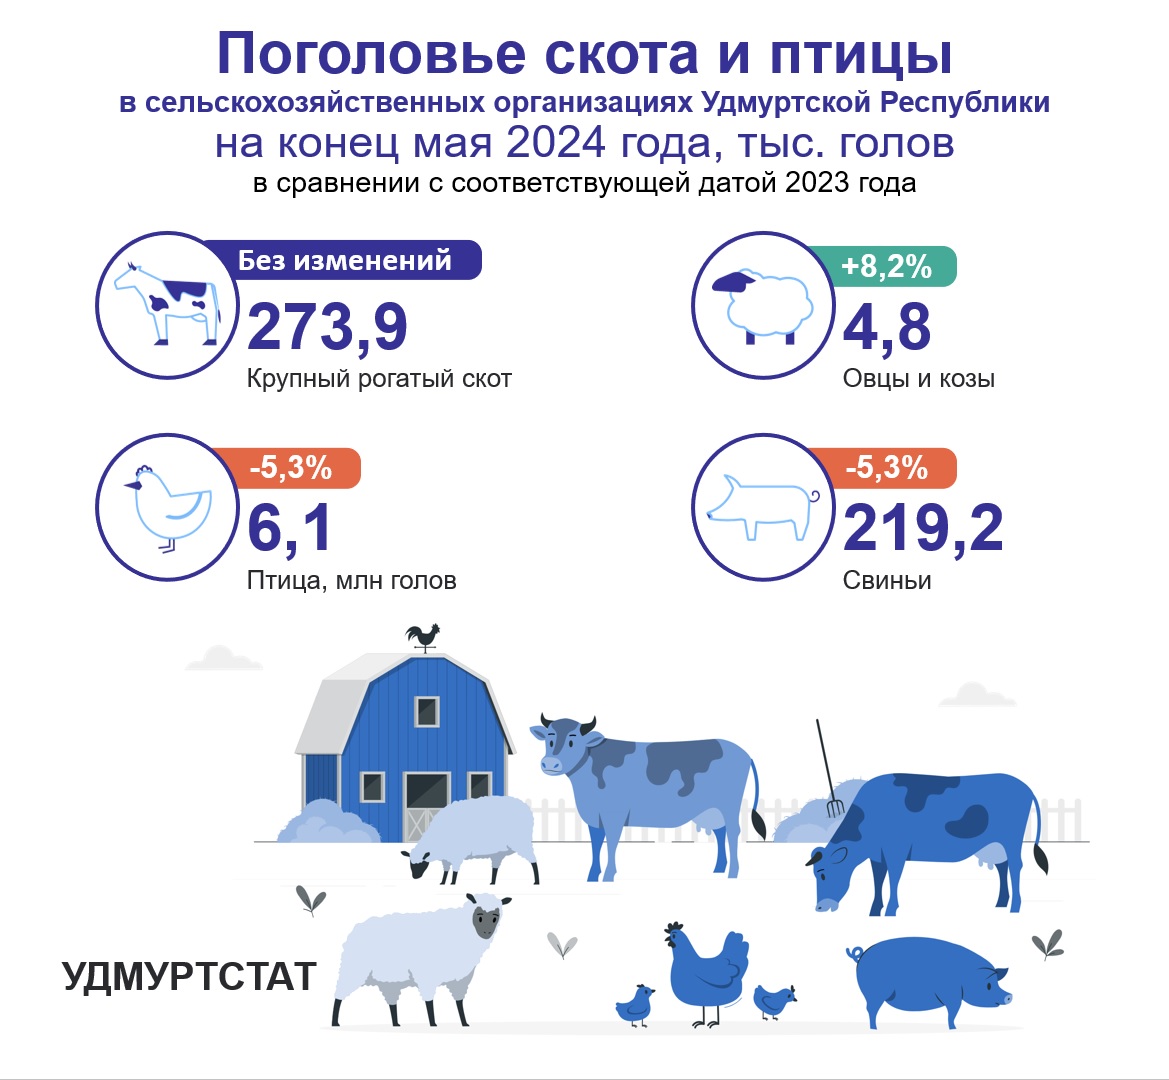 Поголовье крупного рогатого скота в сельхозпредприятиях Удмуртии на конец мая 2024 не изменилось по сравнению с маем 2023 года и составило 273,9 тыс.голов. Поголовье овец и коз выросло на 8,2 % и составило 4,8 тыс.голов. Поголовье свиней и птицы сократилось на 5,3% по сравнению с показателями 2023 года.